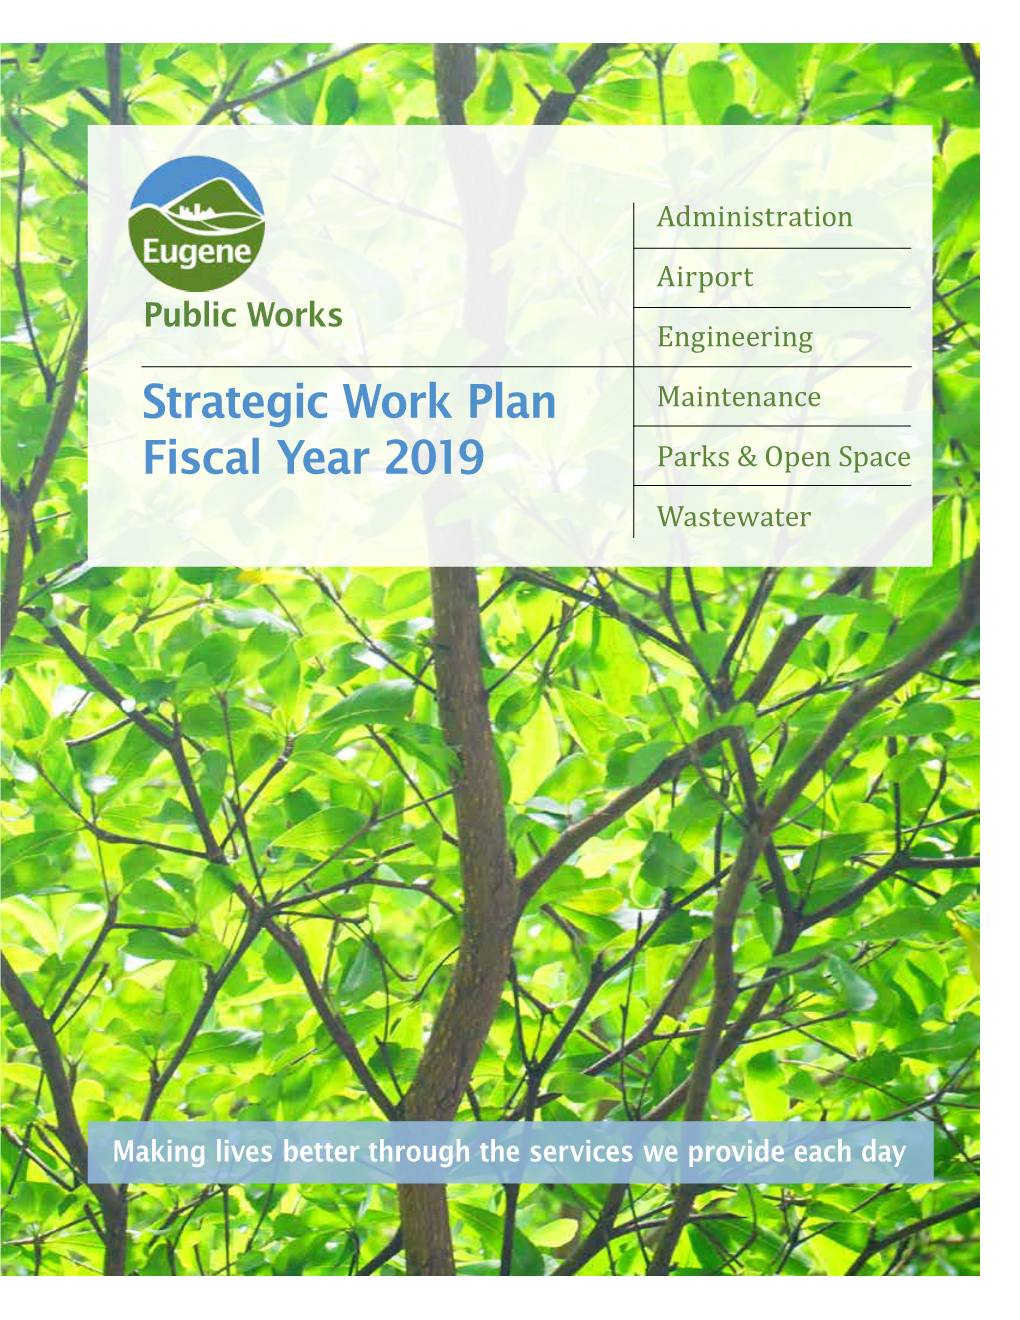 PW 2019 Work Plan